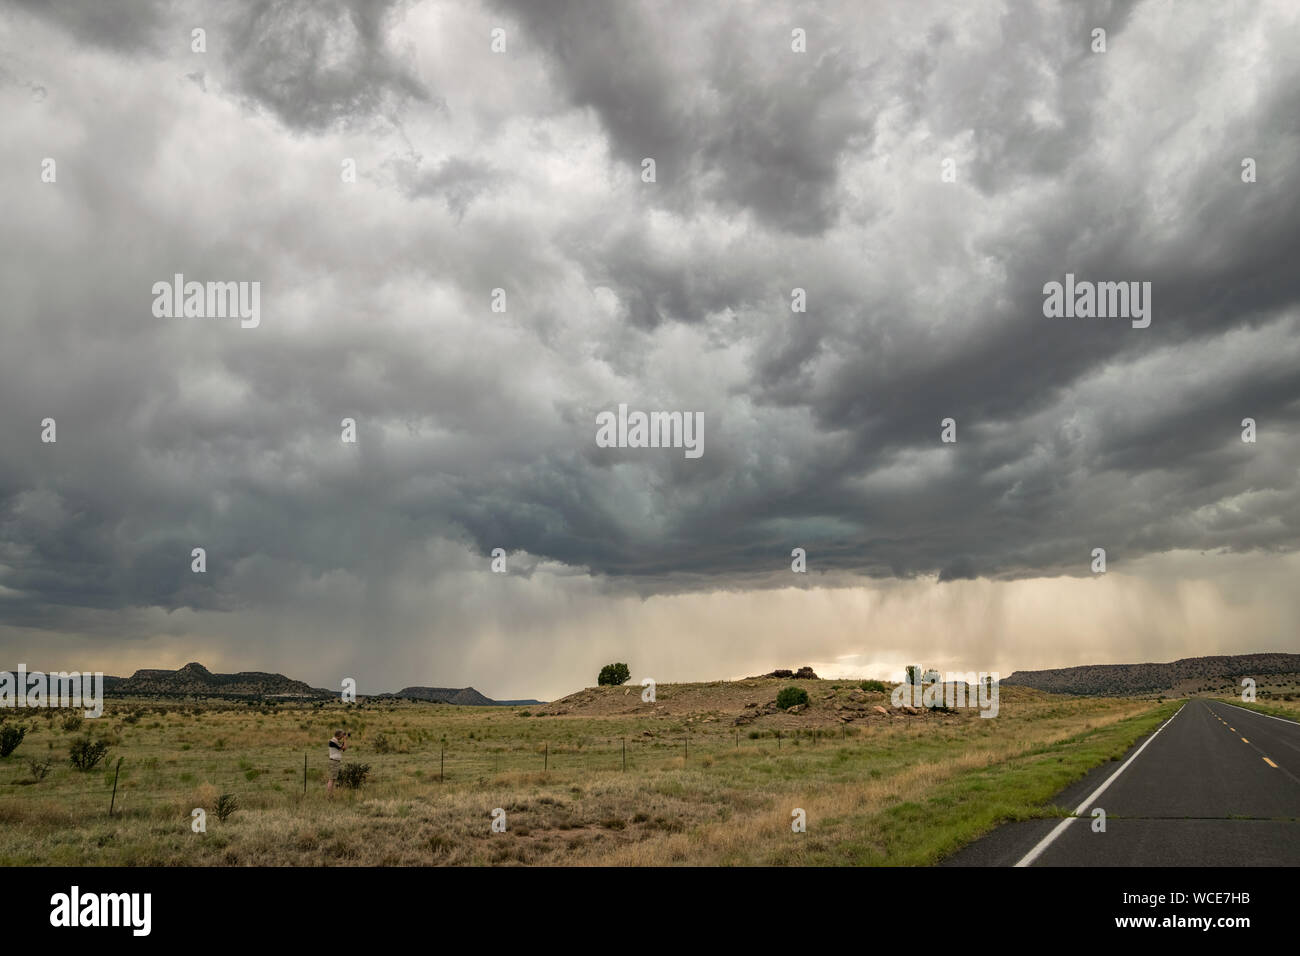 Dramatische Sturm Himmel im äußersten Nordosten New Mexico. Schöne Sturmwolken über Gelände, wo die hohen Ebenen in eine bergige Landschaft verwandelt. Stockfoto